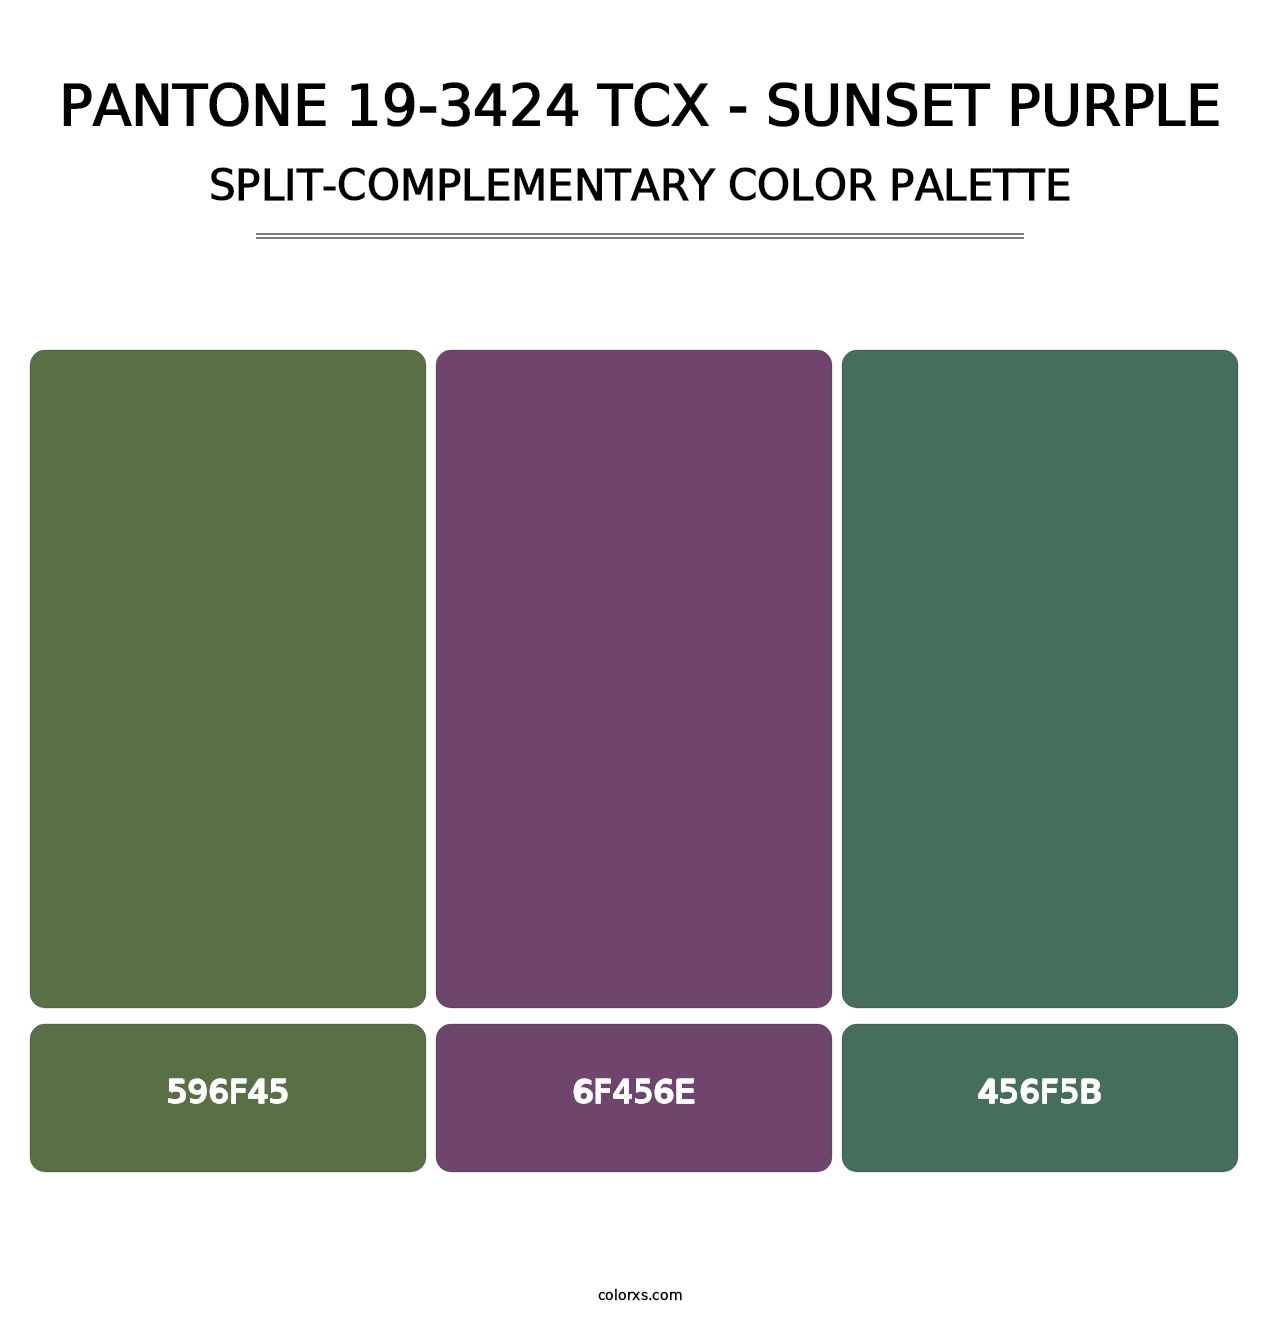 PANTONE 19-3424 TCX - Sunset Purple - Split-Complementary Color Palette